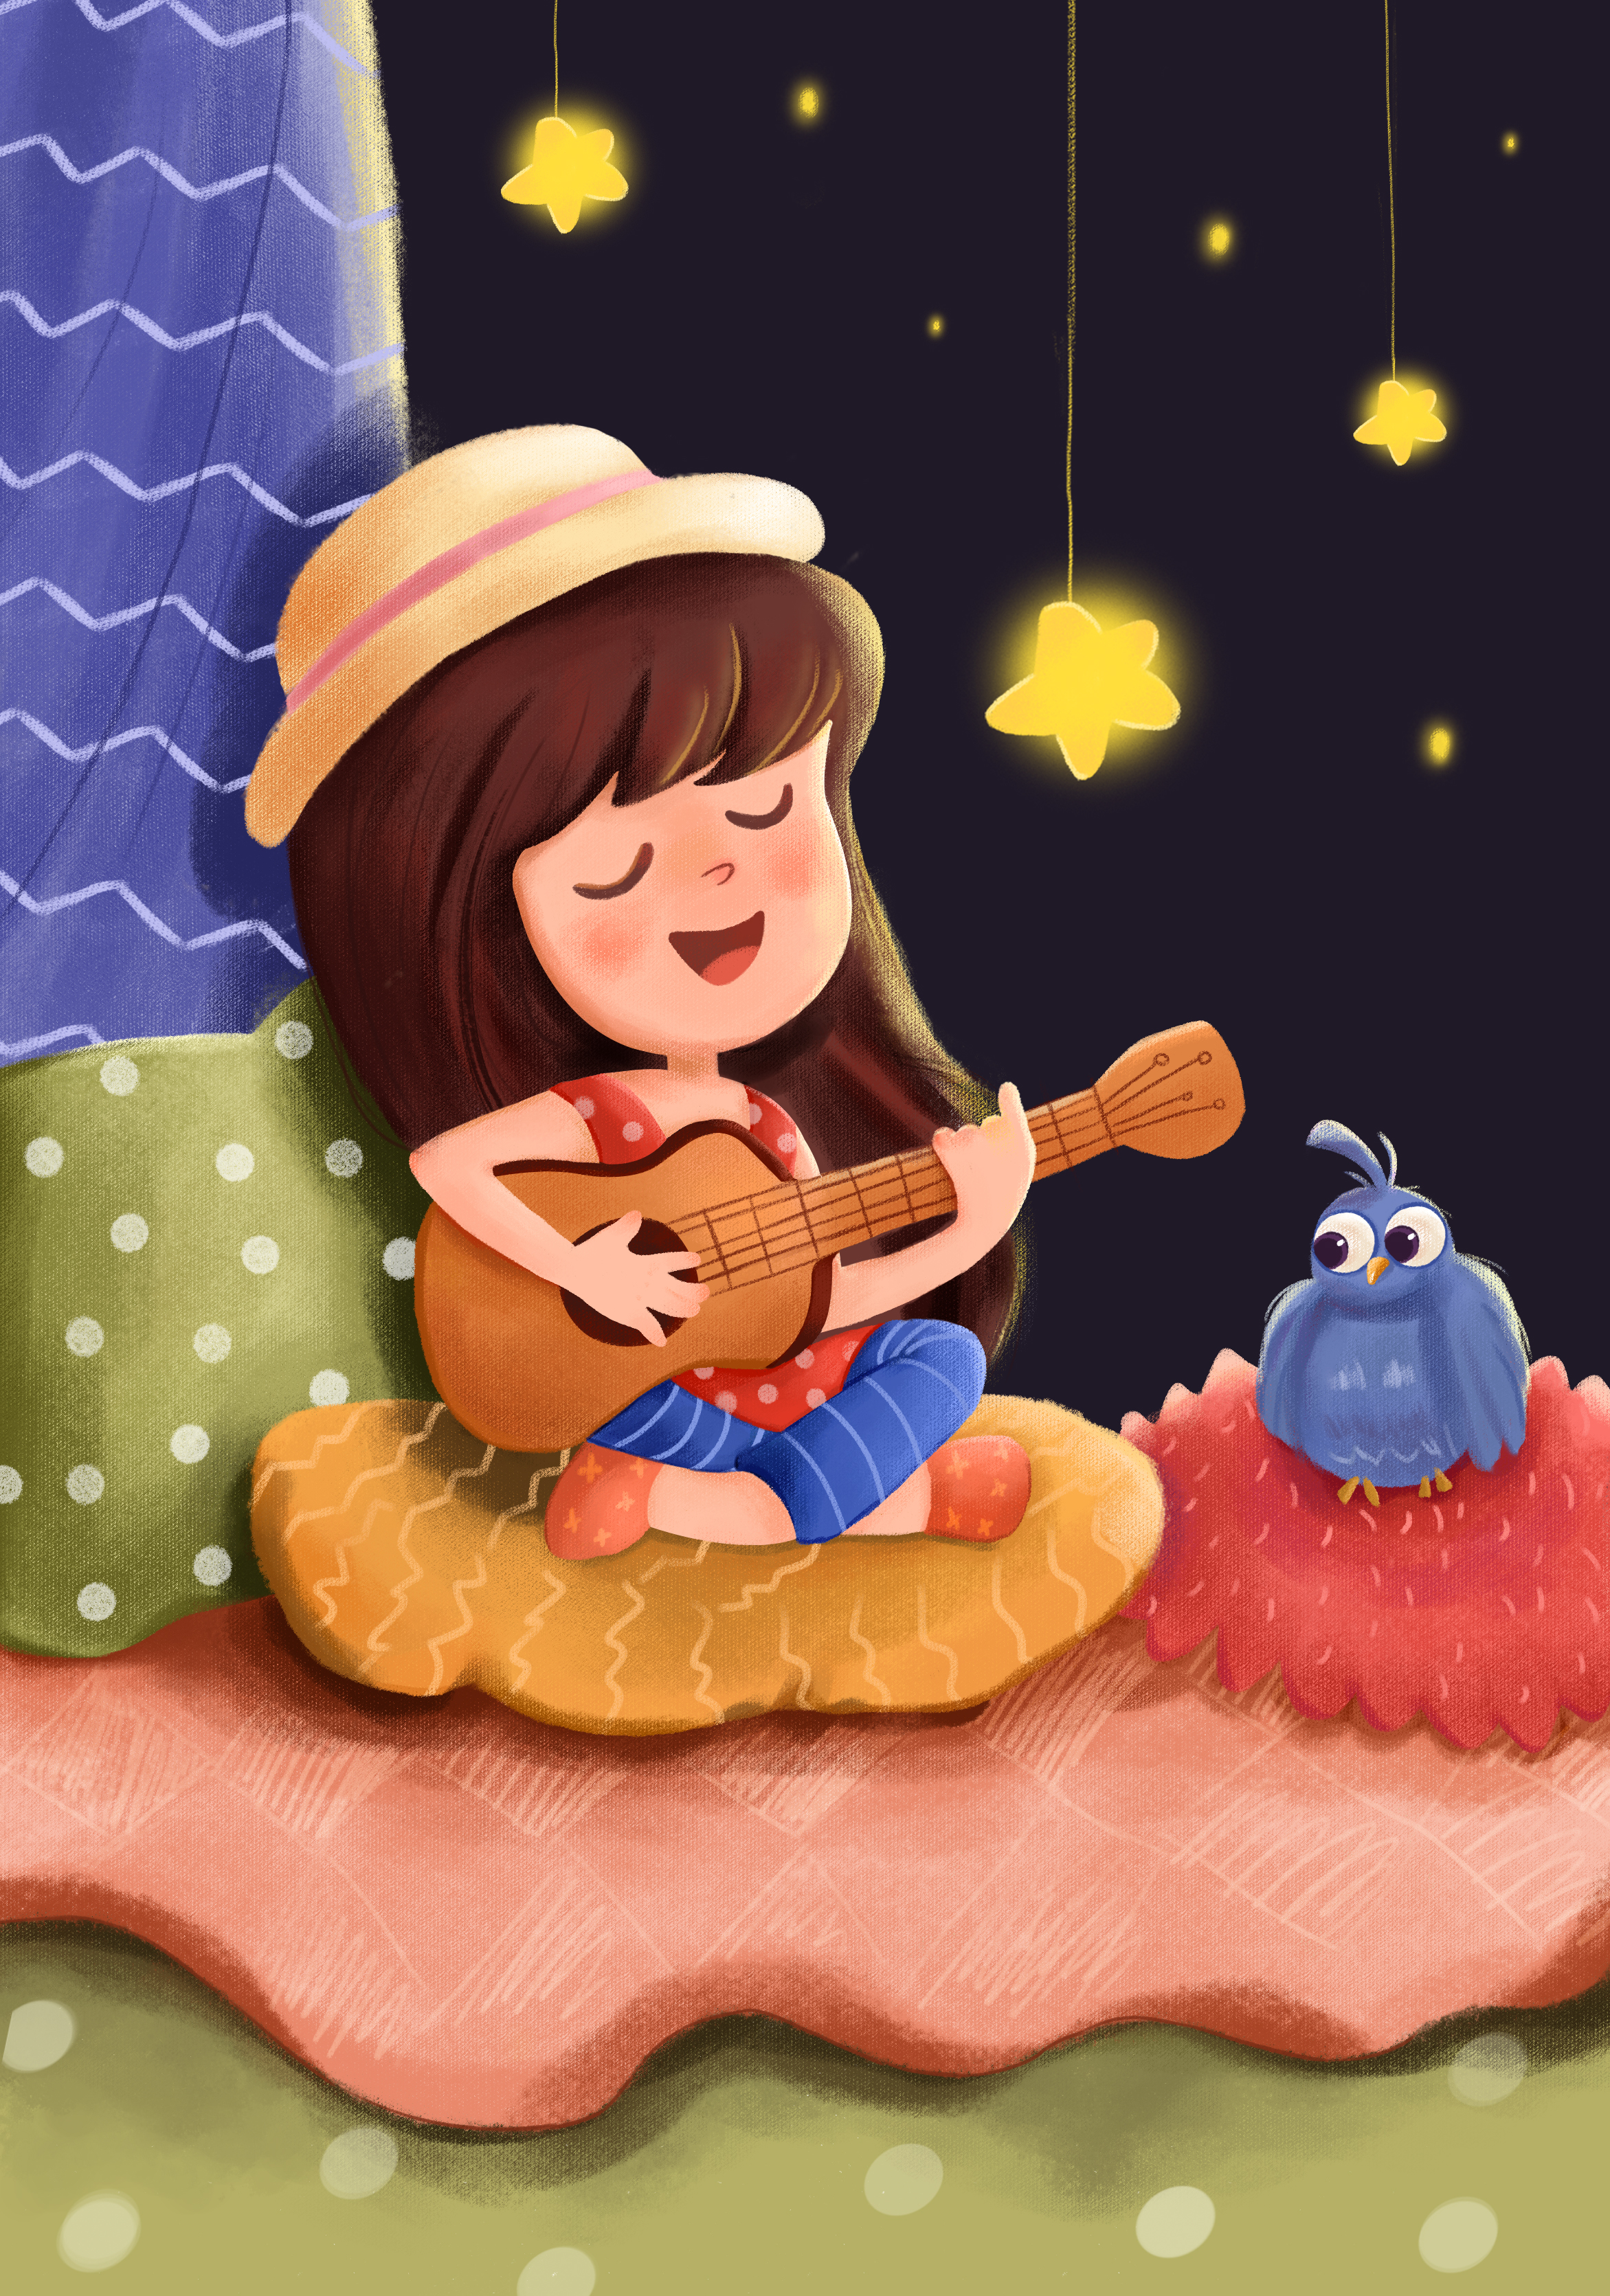 爱弹吉他的小姑娘